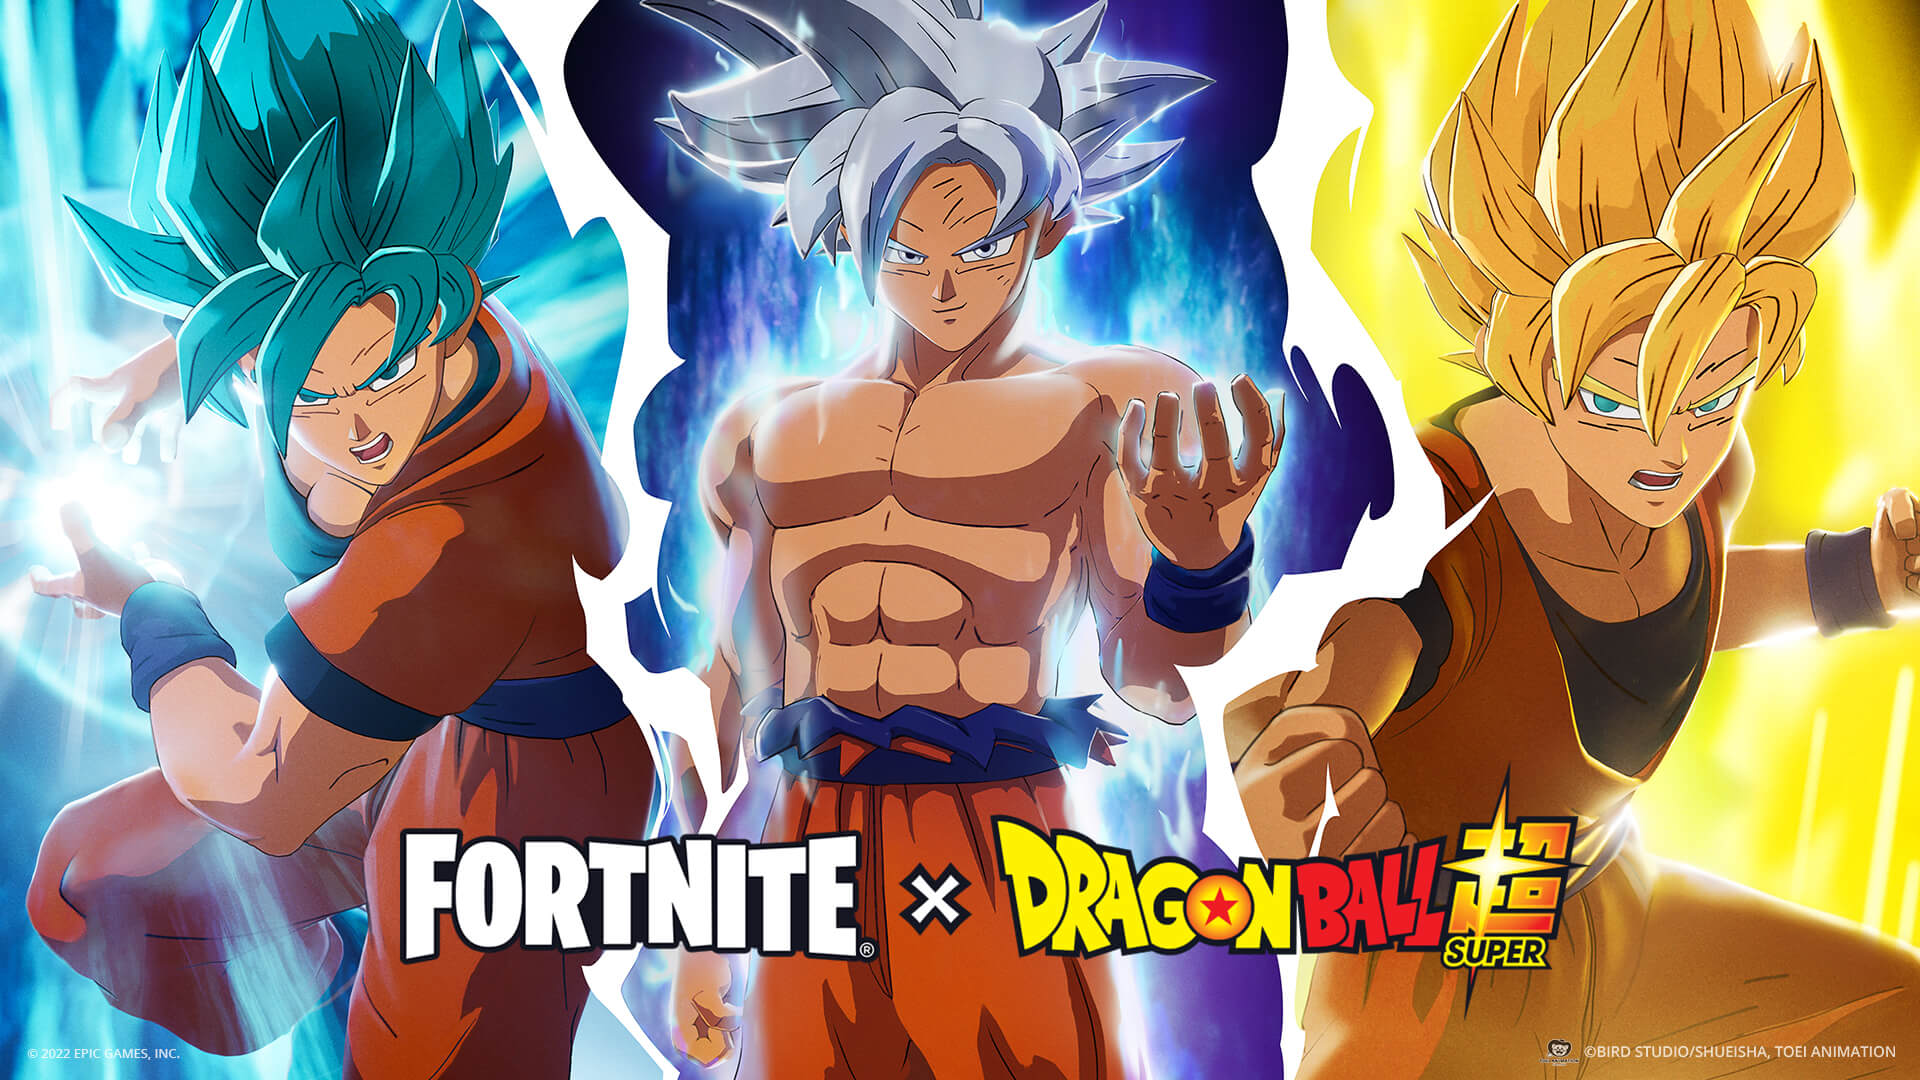 Evento de Dragon Ball vai trazer personagens épicas para o Fortnite